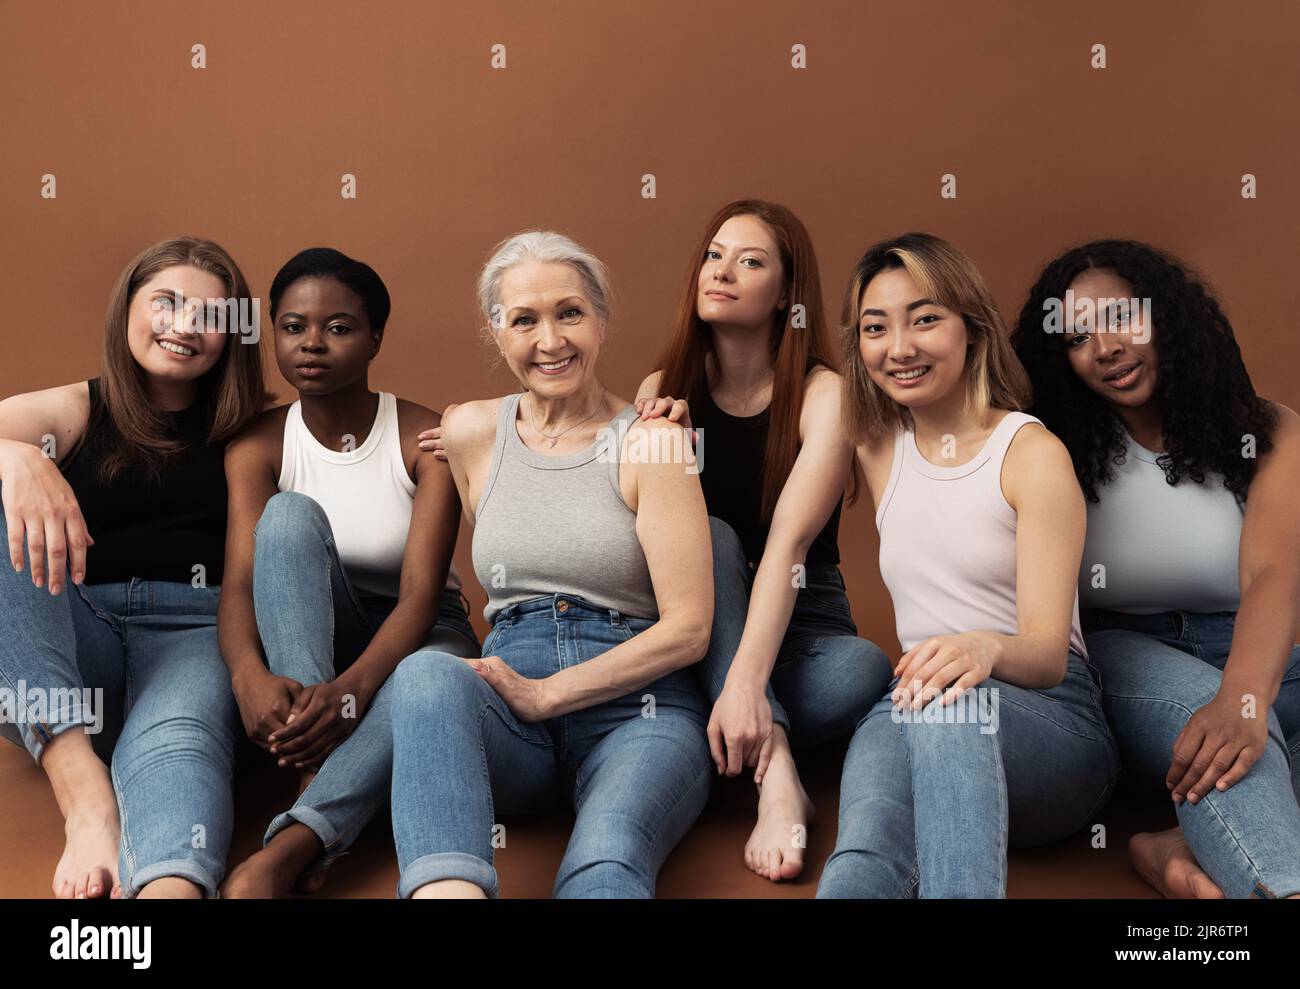 Gruppo di sei donne diverse in casualità seduti insieme su sfondo marrone Foto Stock